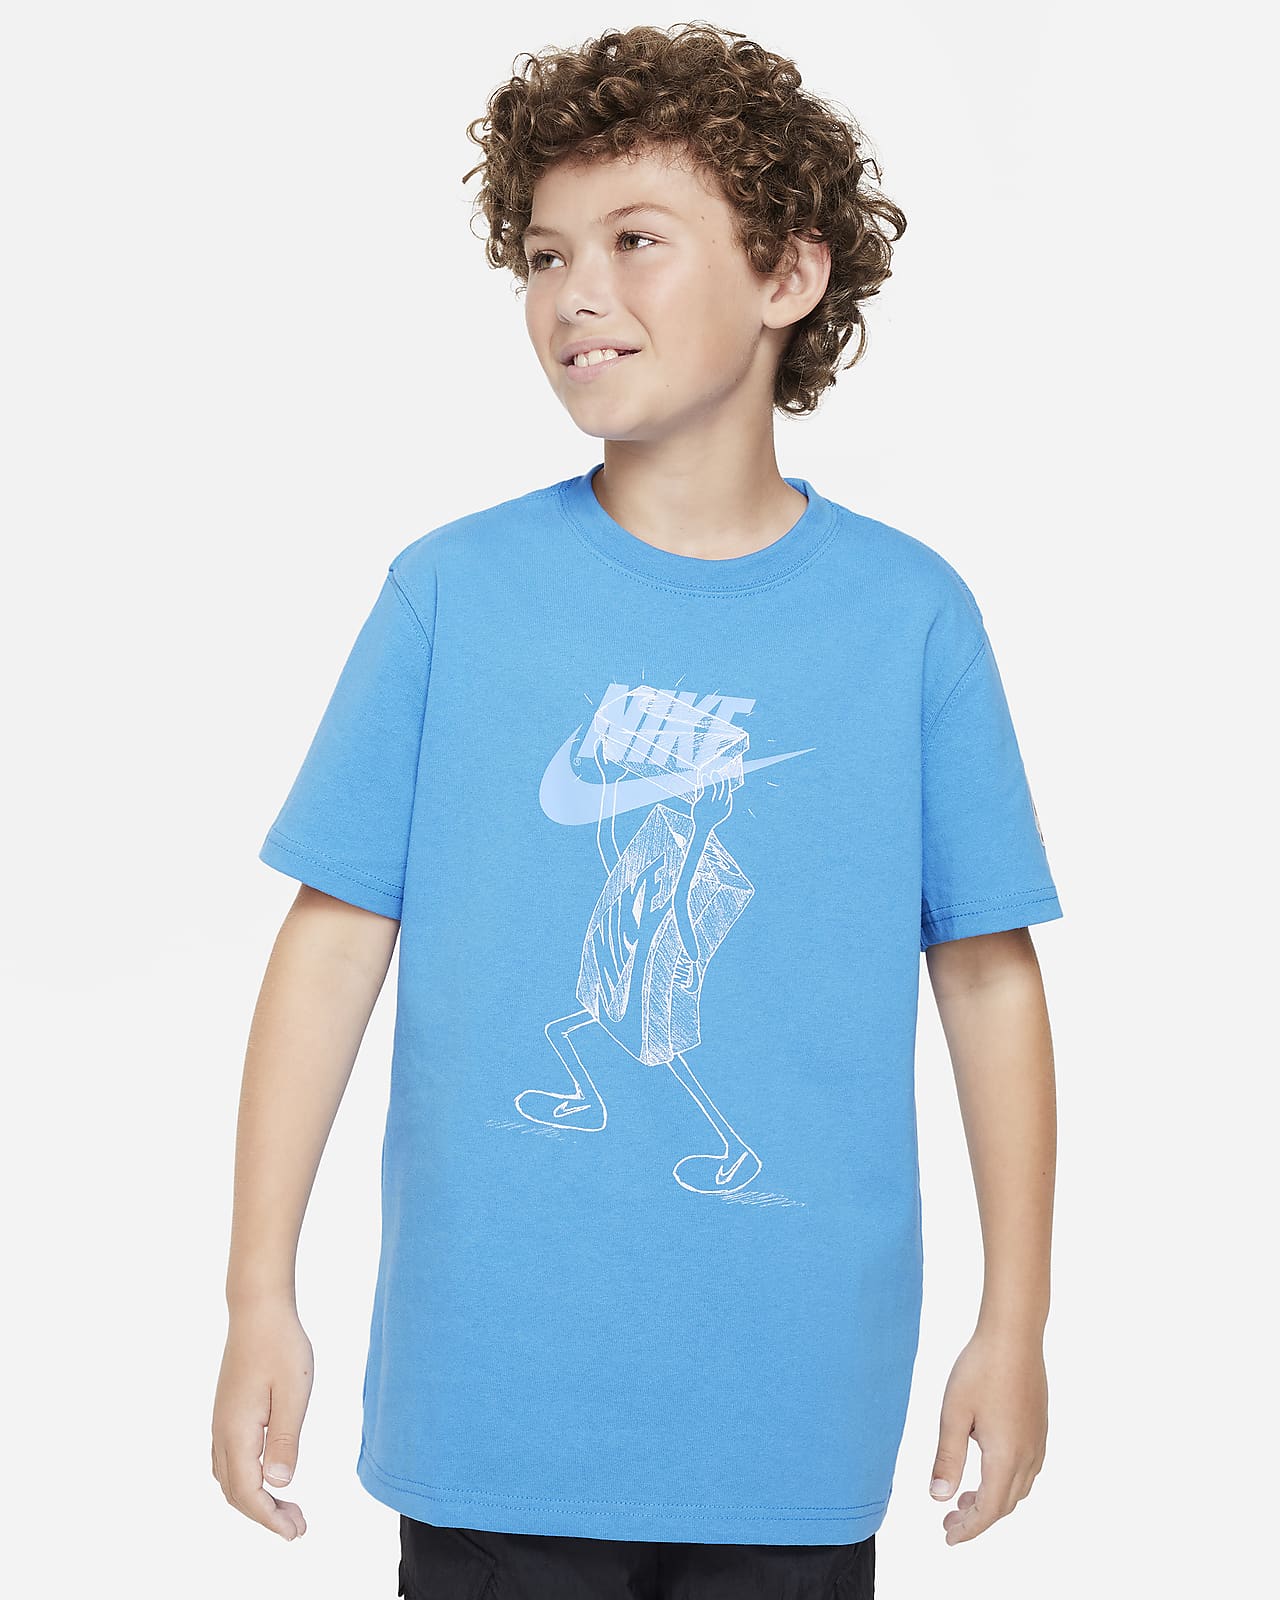 Big Kids Tops & T-Shirts.